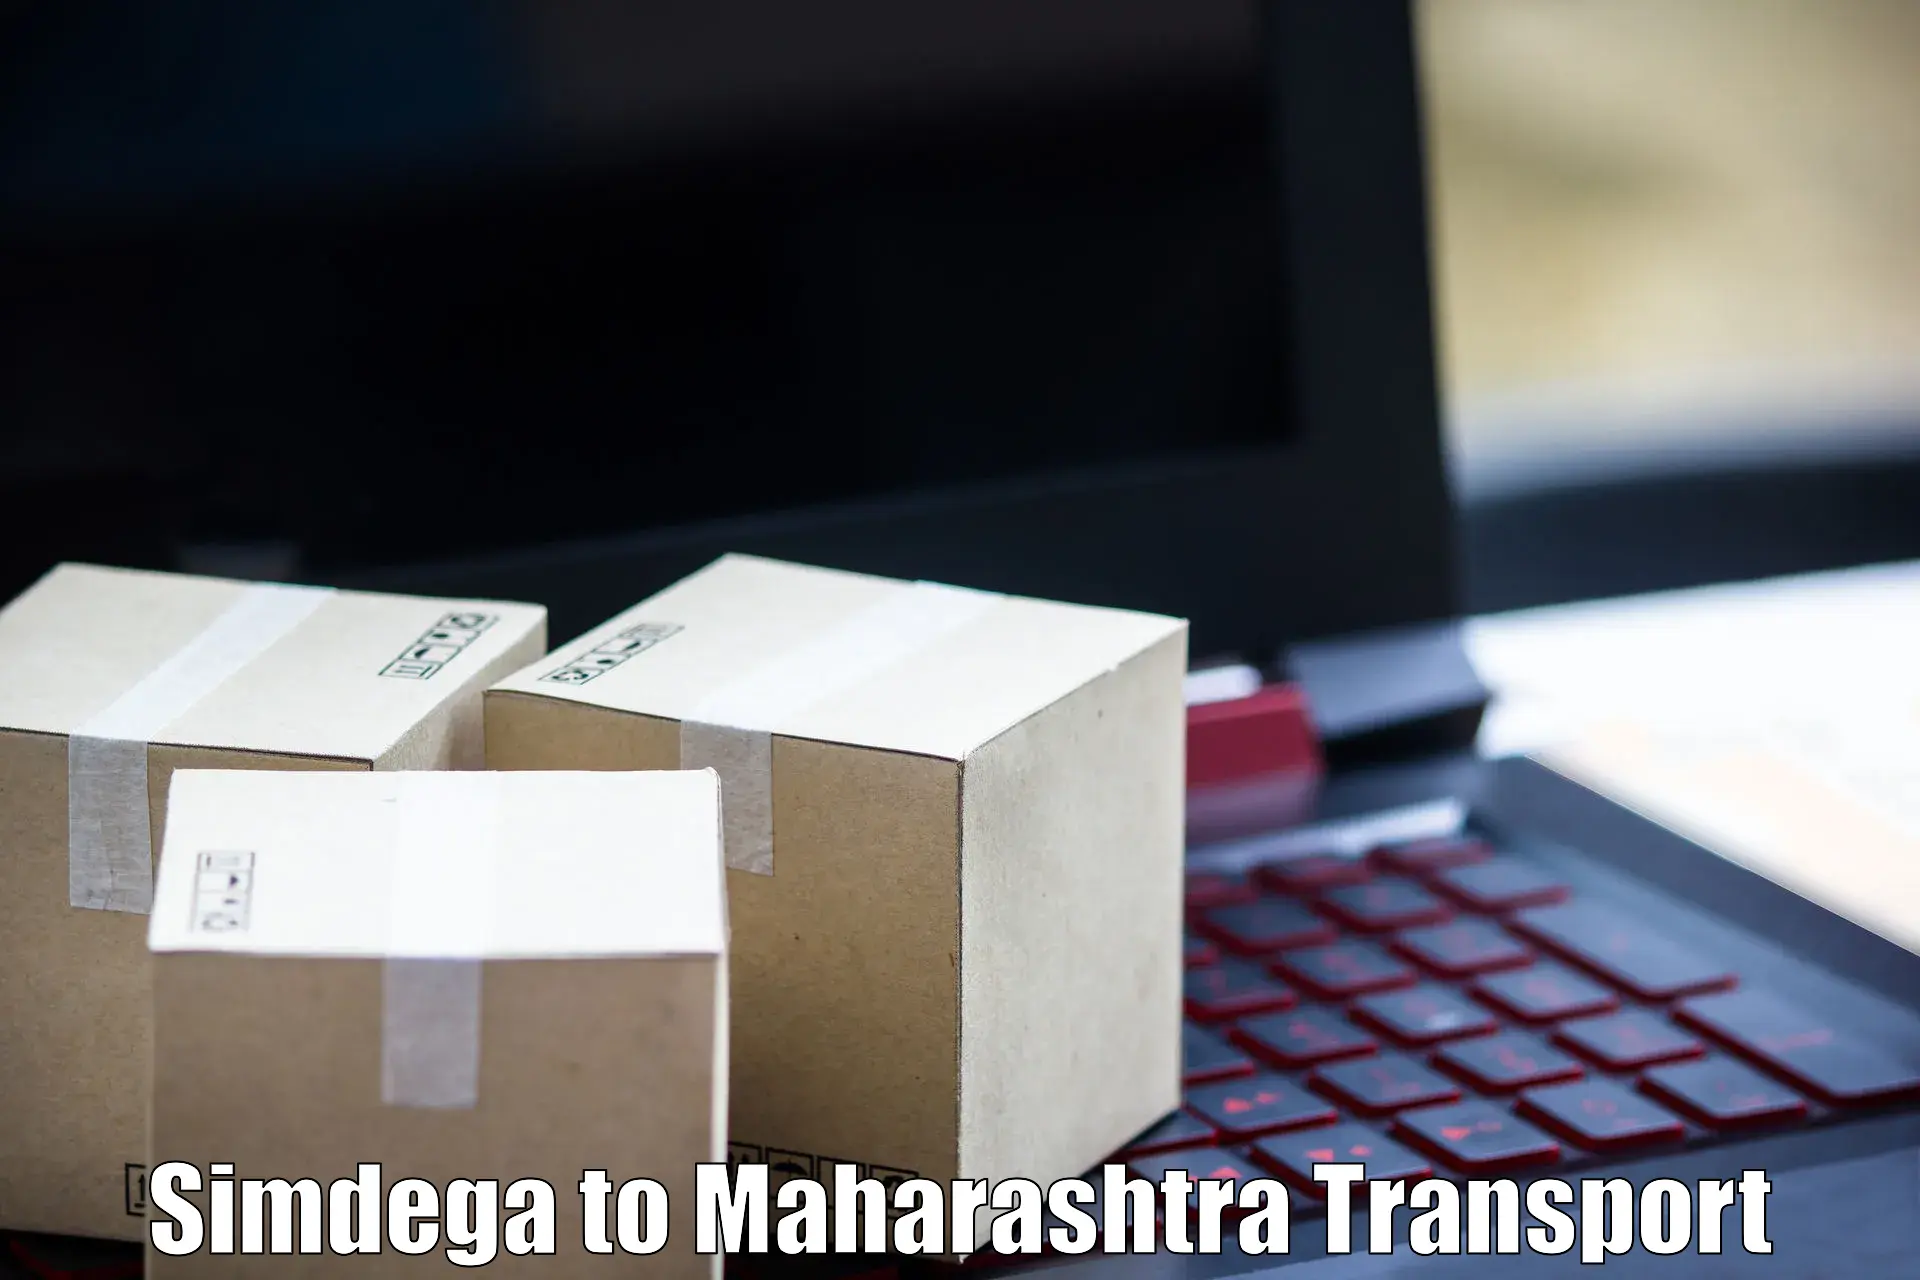 Transport in sharing Simdega to Shahada